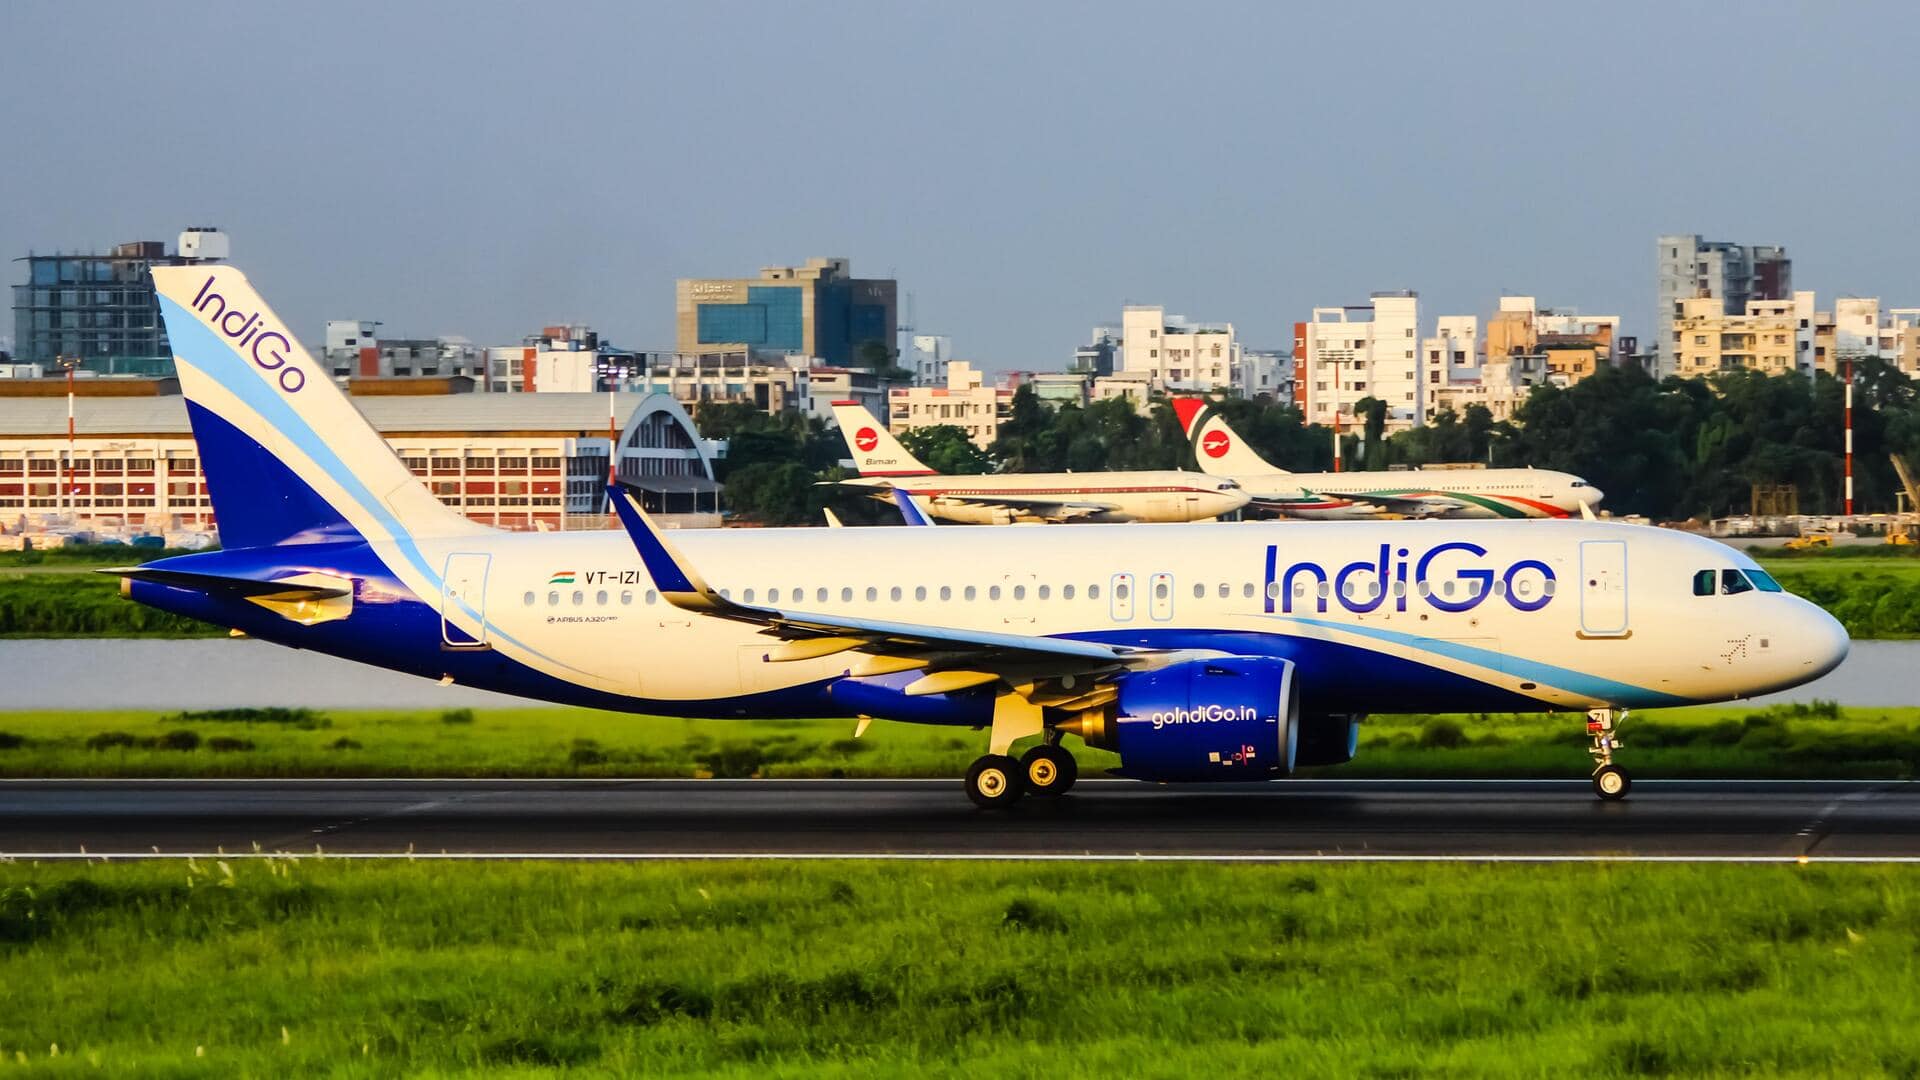 इंडिगो विमान की पटना-दिल्ली फ्लाइट का इंजन खराब हुआ, पटना हवाई अड्डे पर इमरजेंसी लैंडिंग